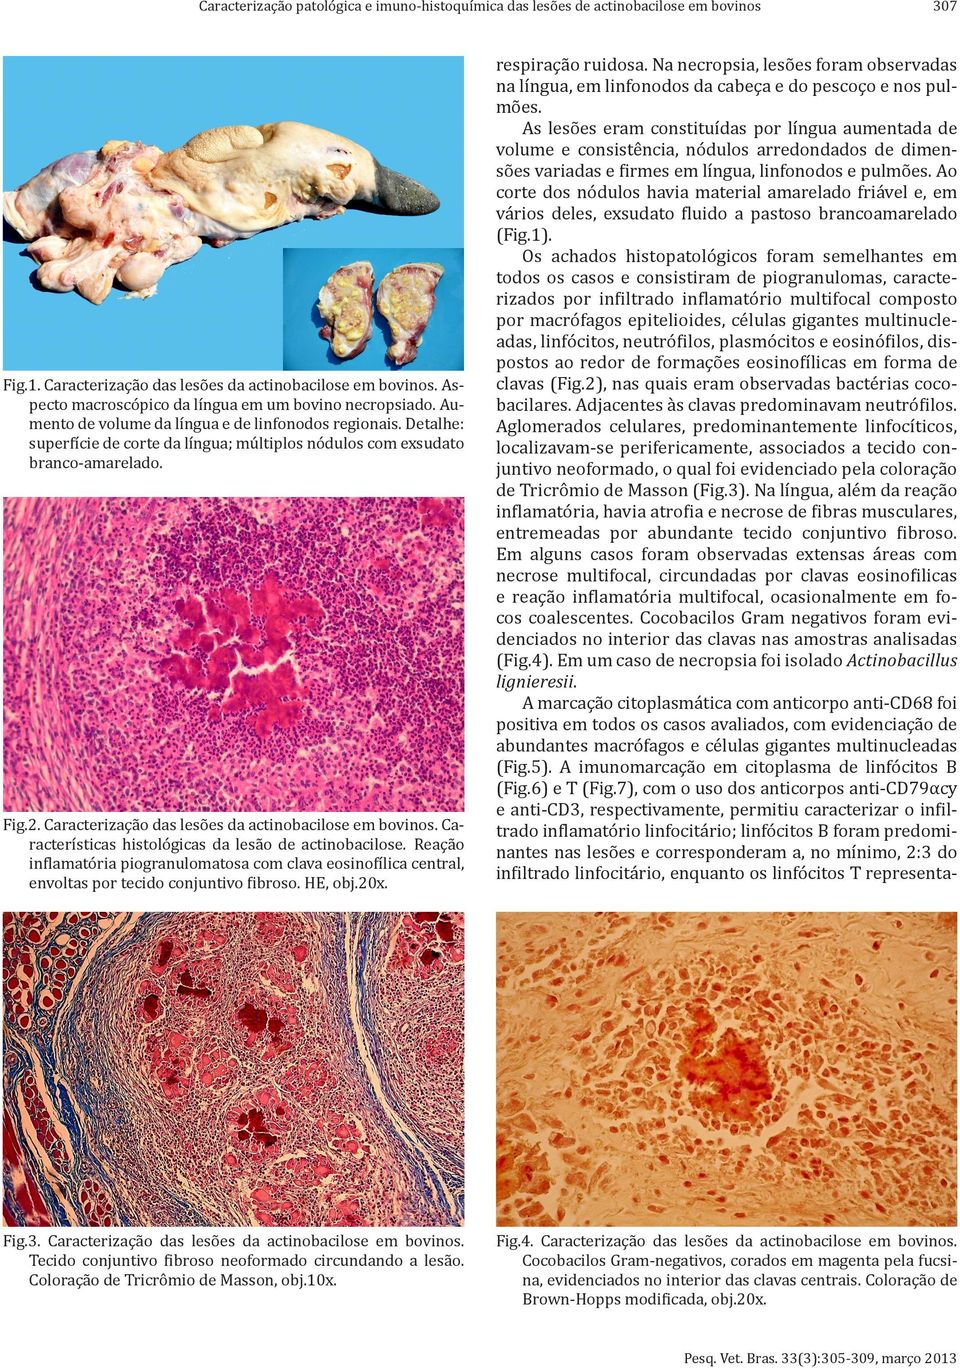 Fig.2. Caracterização das lesões da actinobacilose em bovinos. Características histológicas da lesão de actinobacilose.